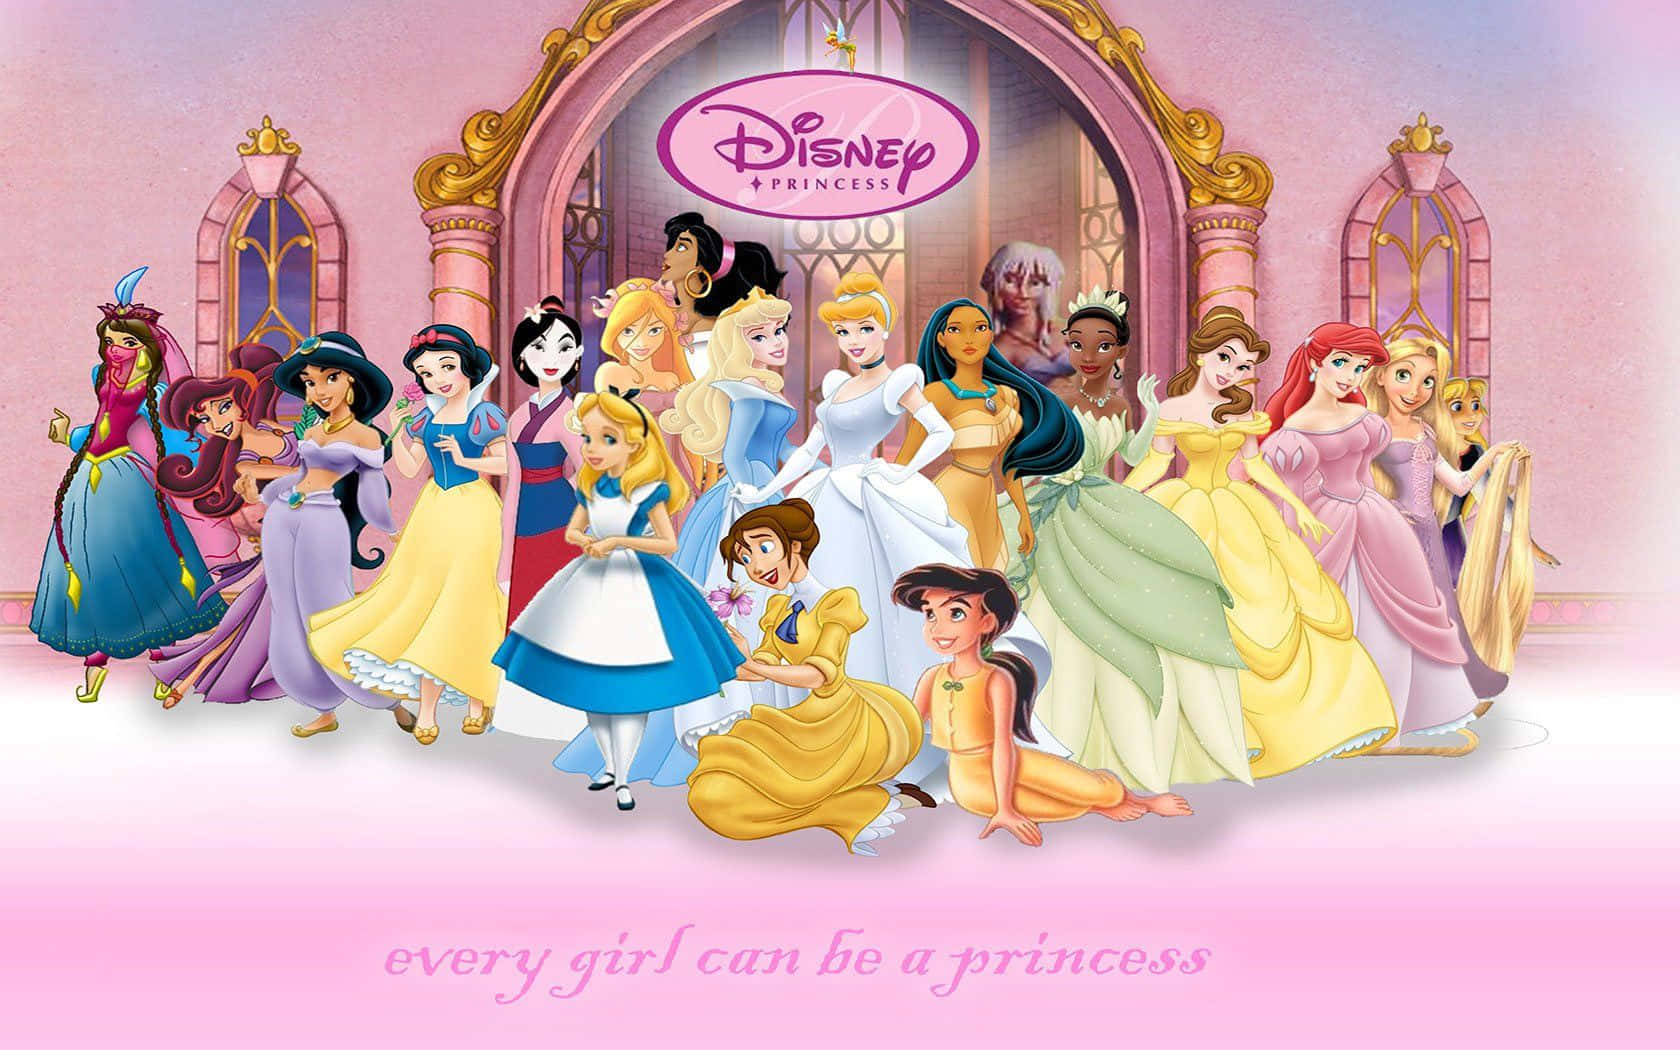 Imagemdo Palácio Real Das Princesas Da Disney.